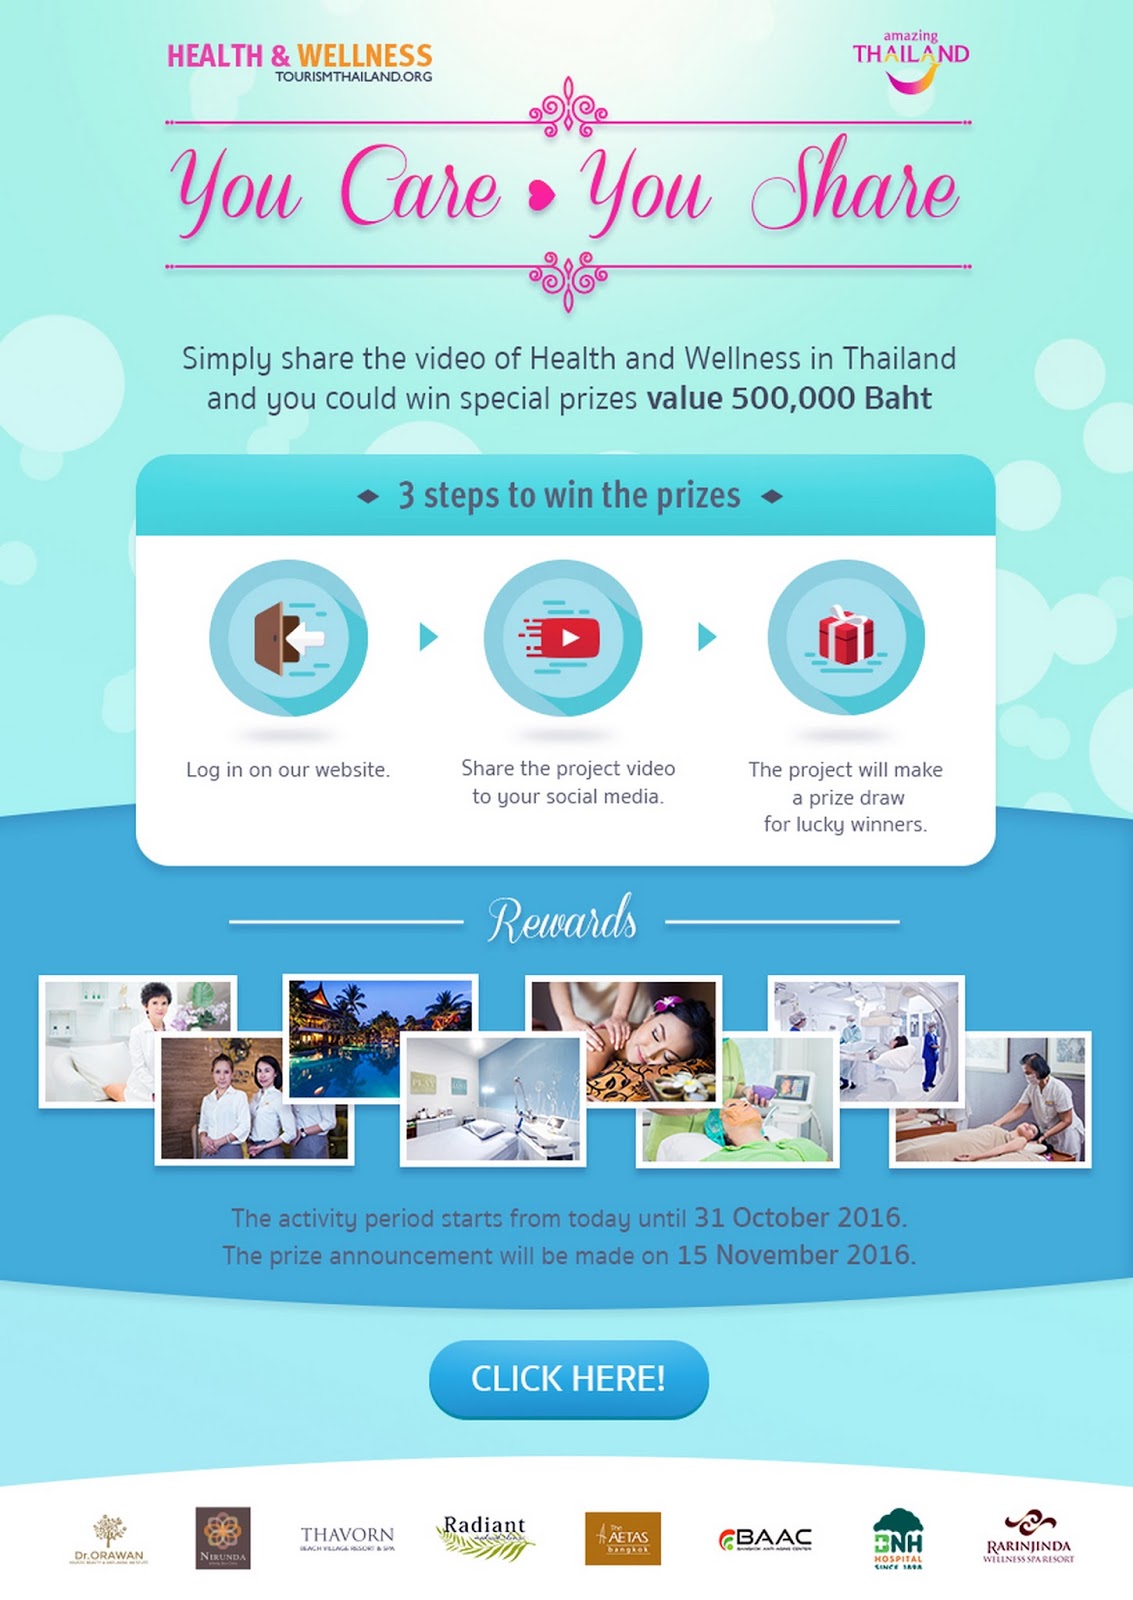 การท่องเที่ยวแห่งประเทศไทย ส่งกิจกรรม You Care You Share กระตุ้นตลาดท่องเที่ยวเชิงสุขภาพ